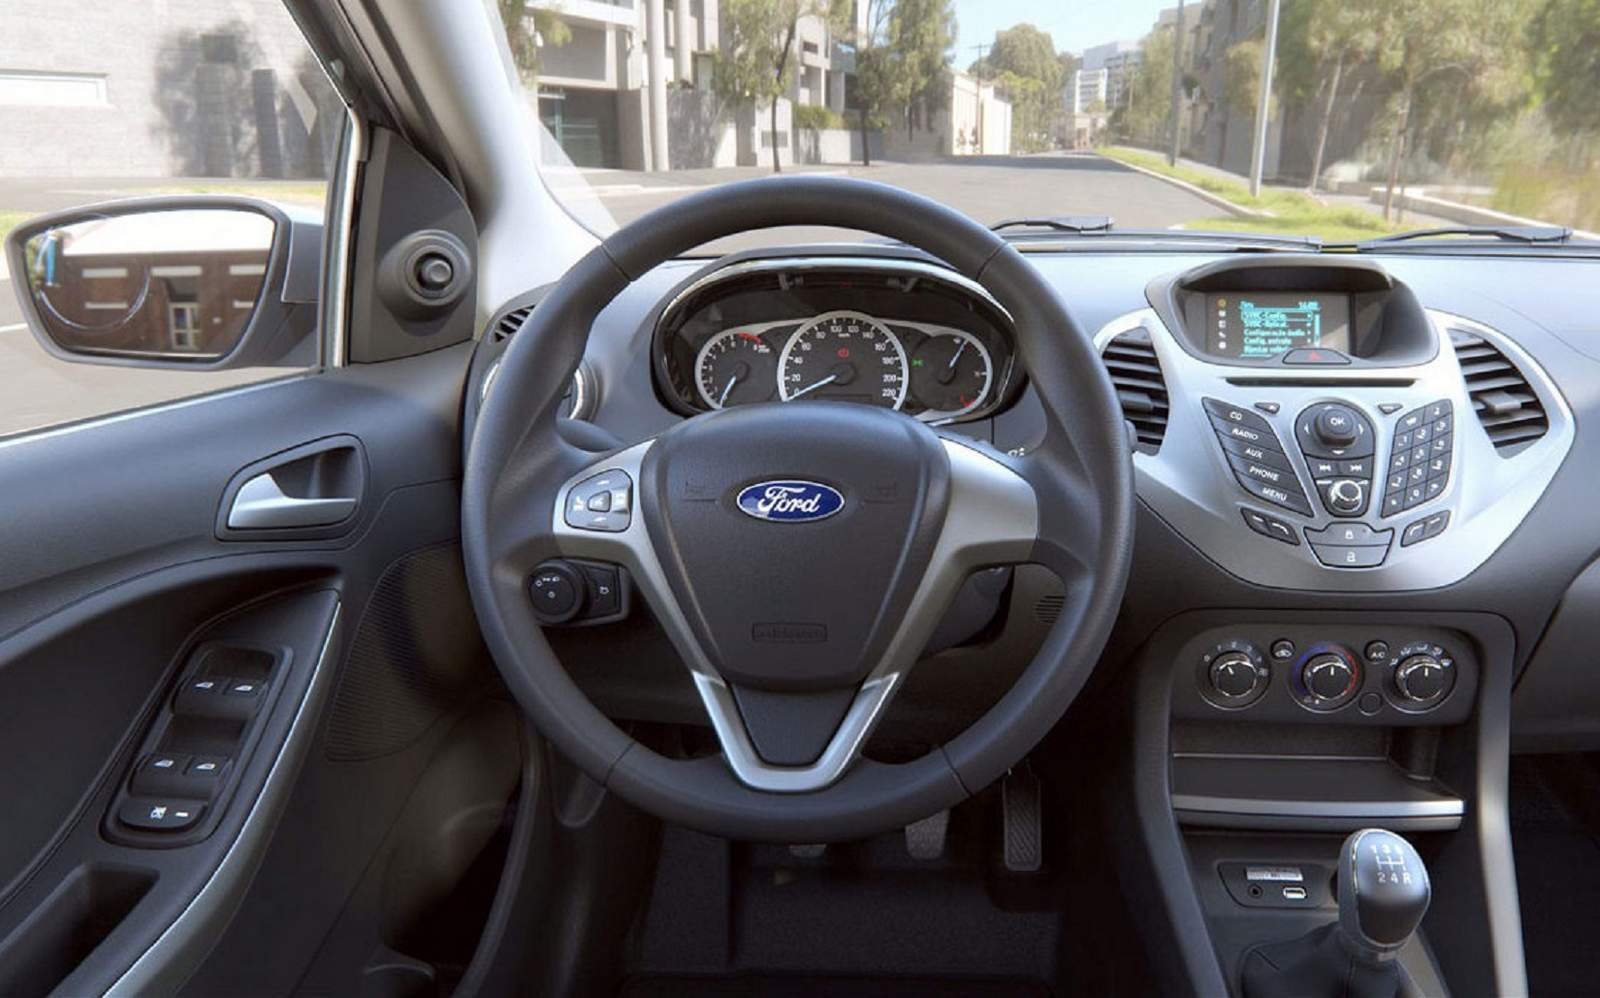 Novo Ford KA SEL 2015 - interior